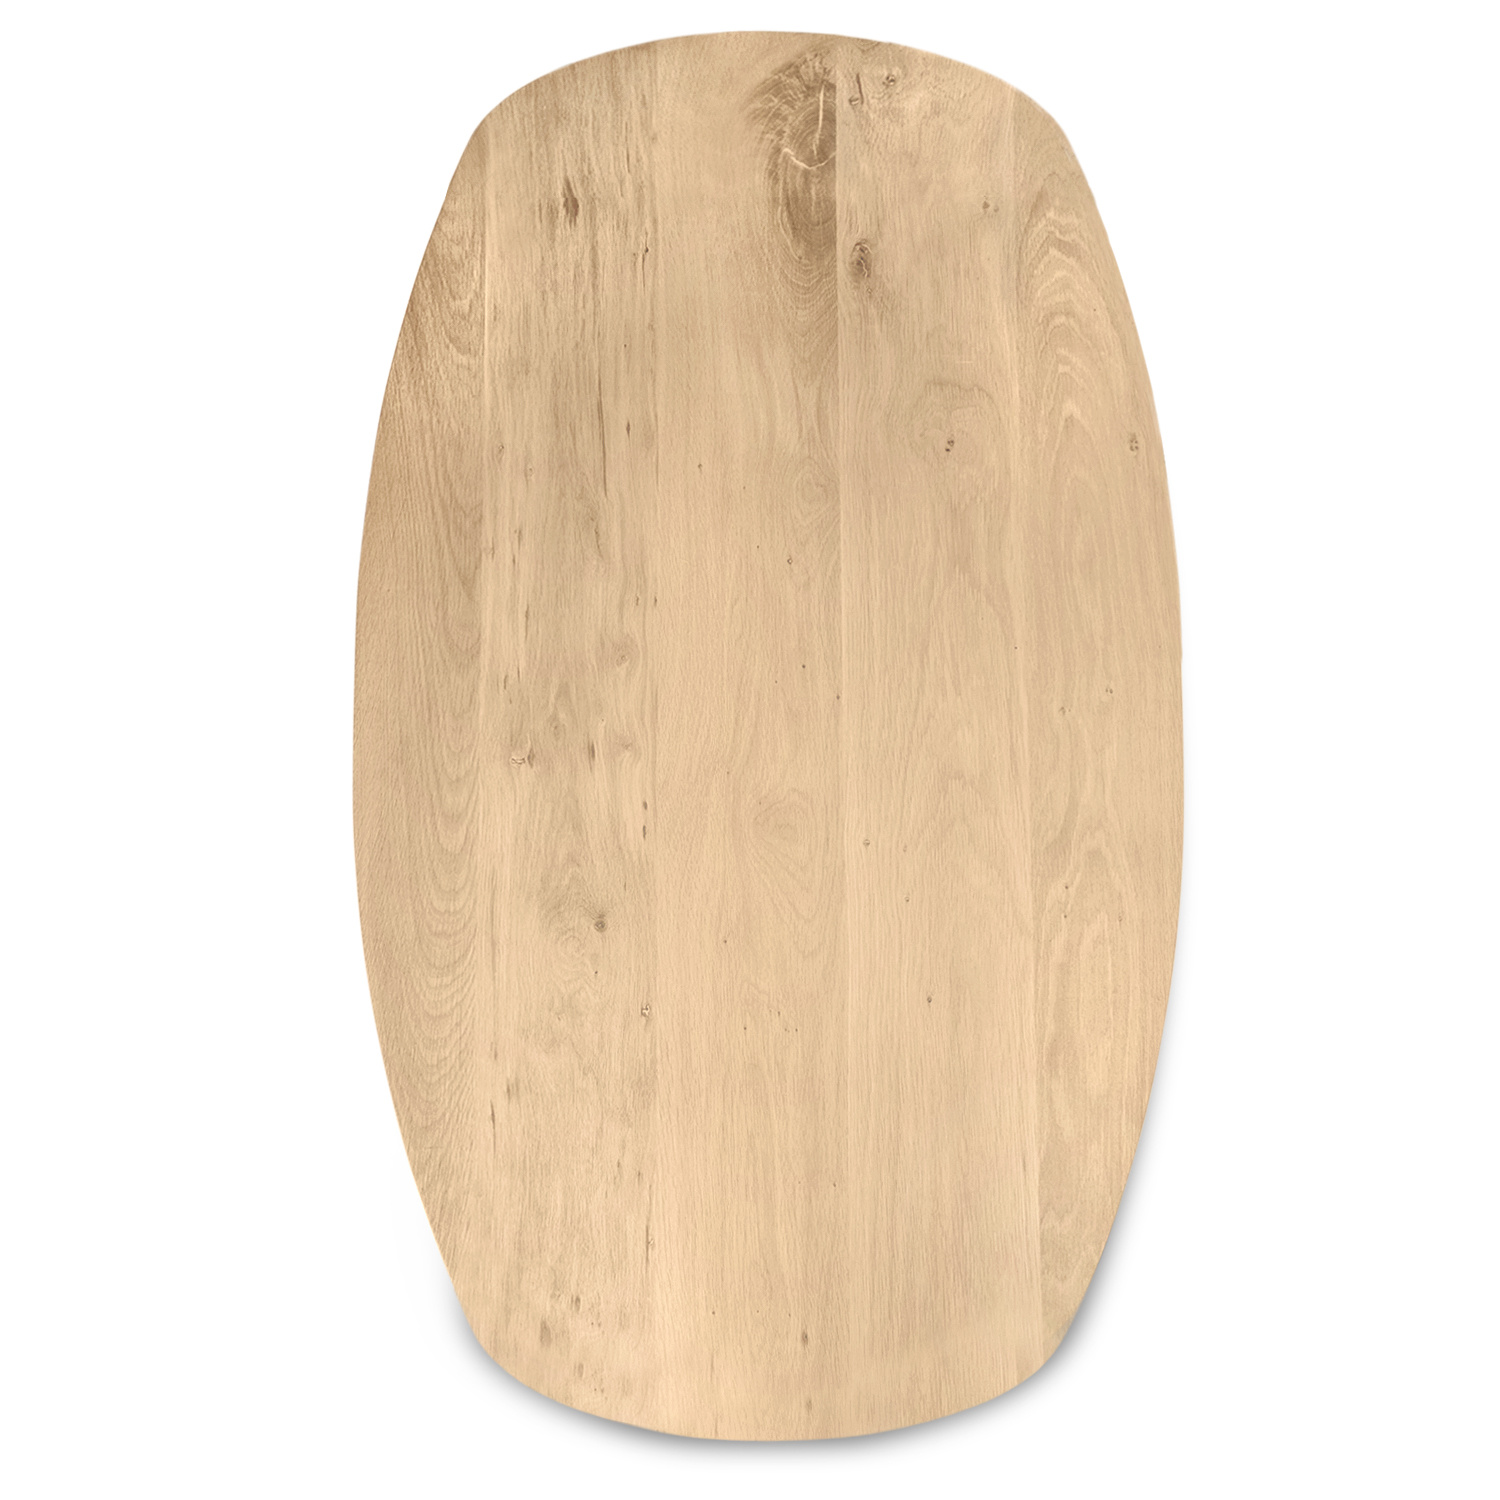  Deens ovaal eiken tafelblad - 2,5 cm dik (1-laag) - Diverse afmetingen - extra rustiek Europees eikenhout - met extra brede lamellen (circa 14-20 cm) - verlijmd kd 8-12%